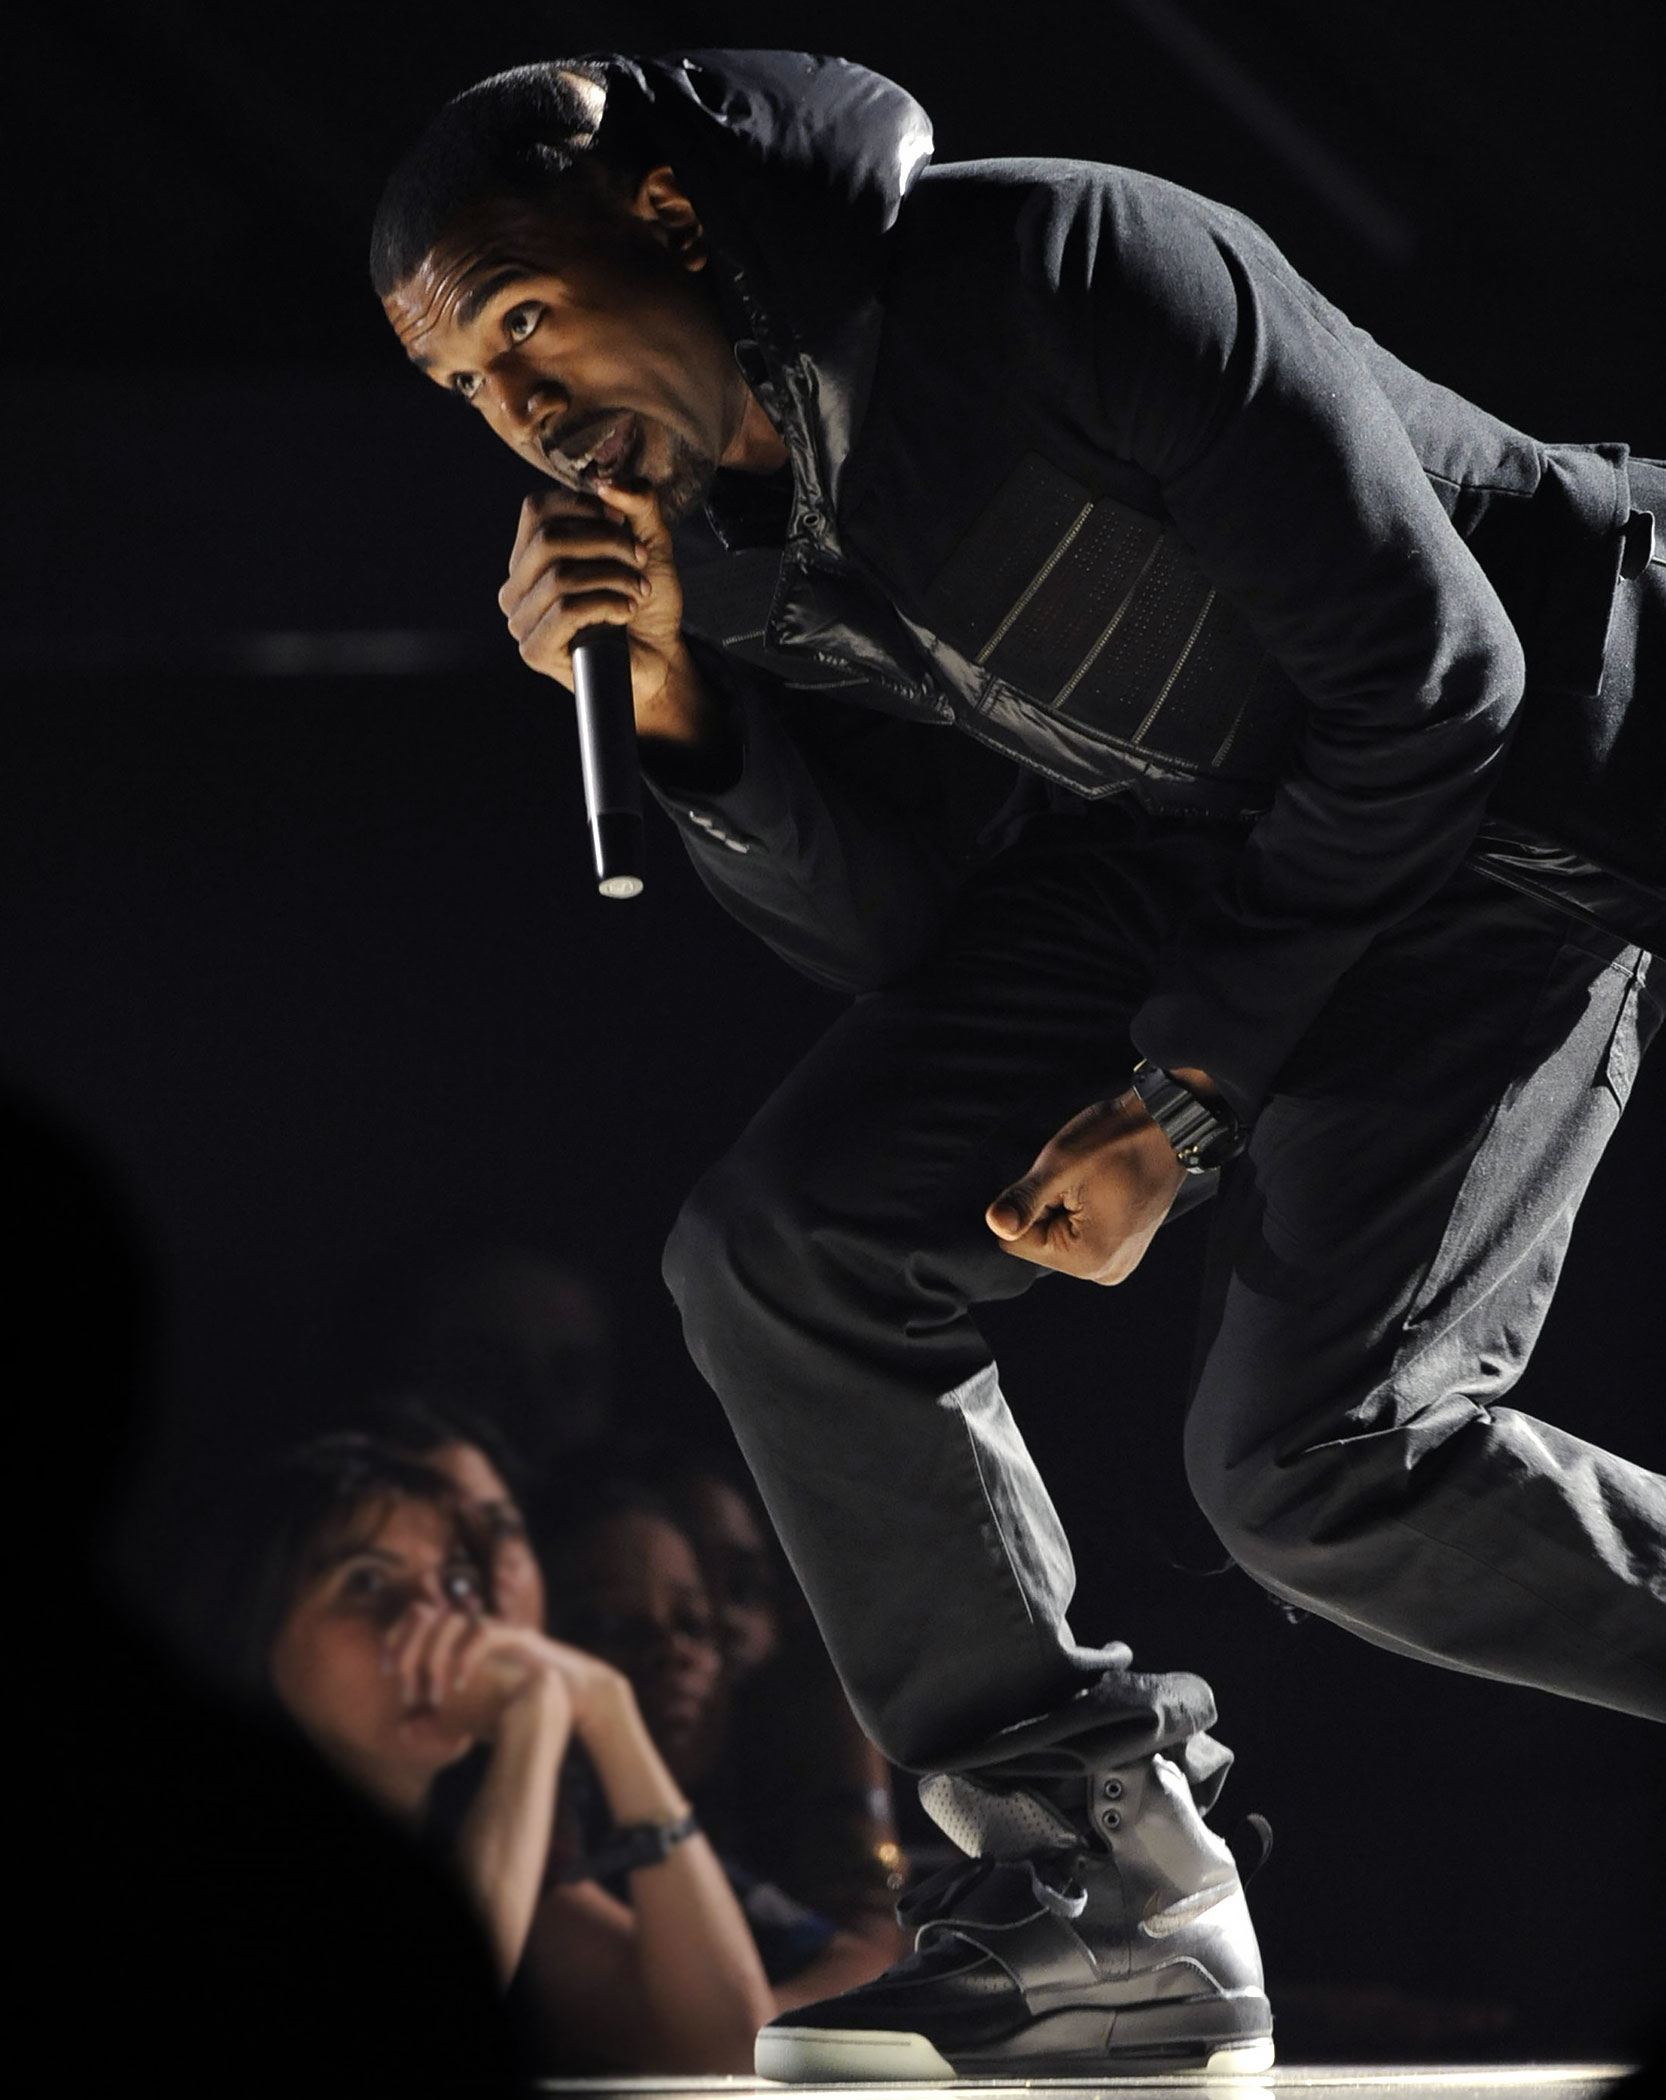 Nike Air Force 1 Bespoke 'Kanye West Jasper' By All Day 